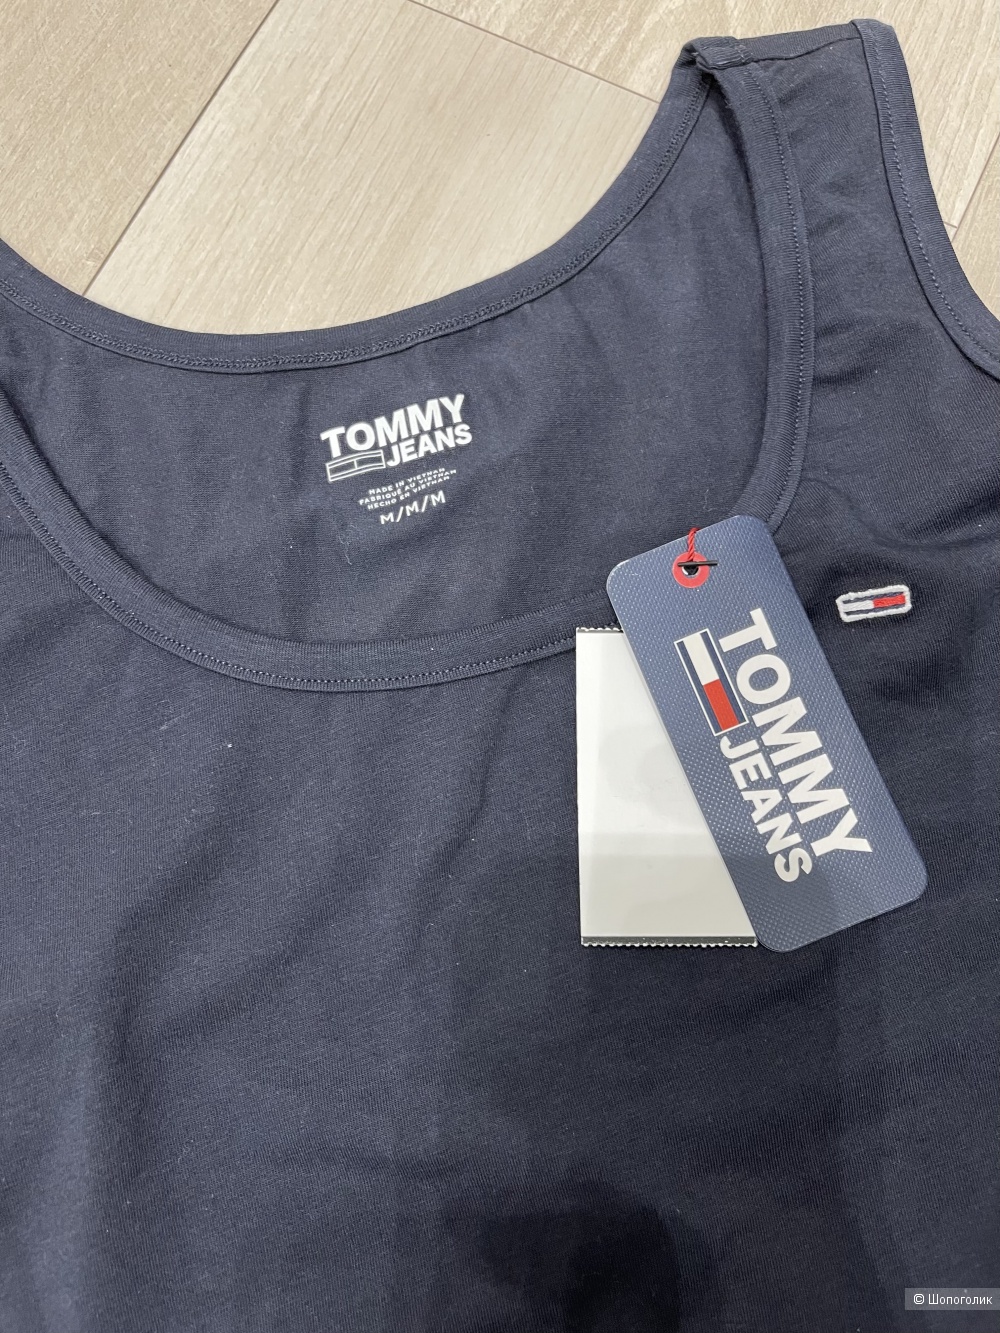 Комплект для спорта Tommy jeans р.М